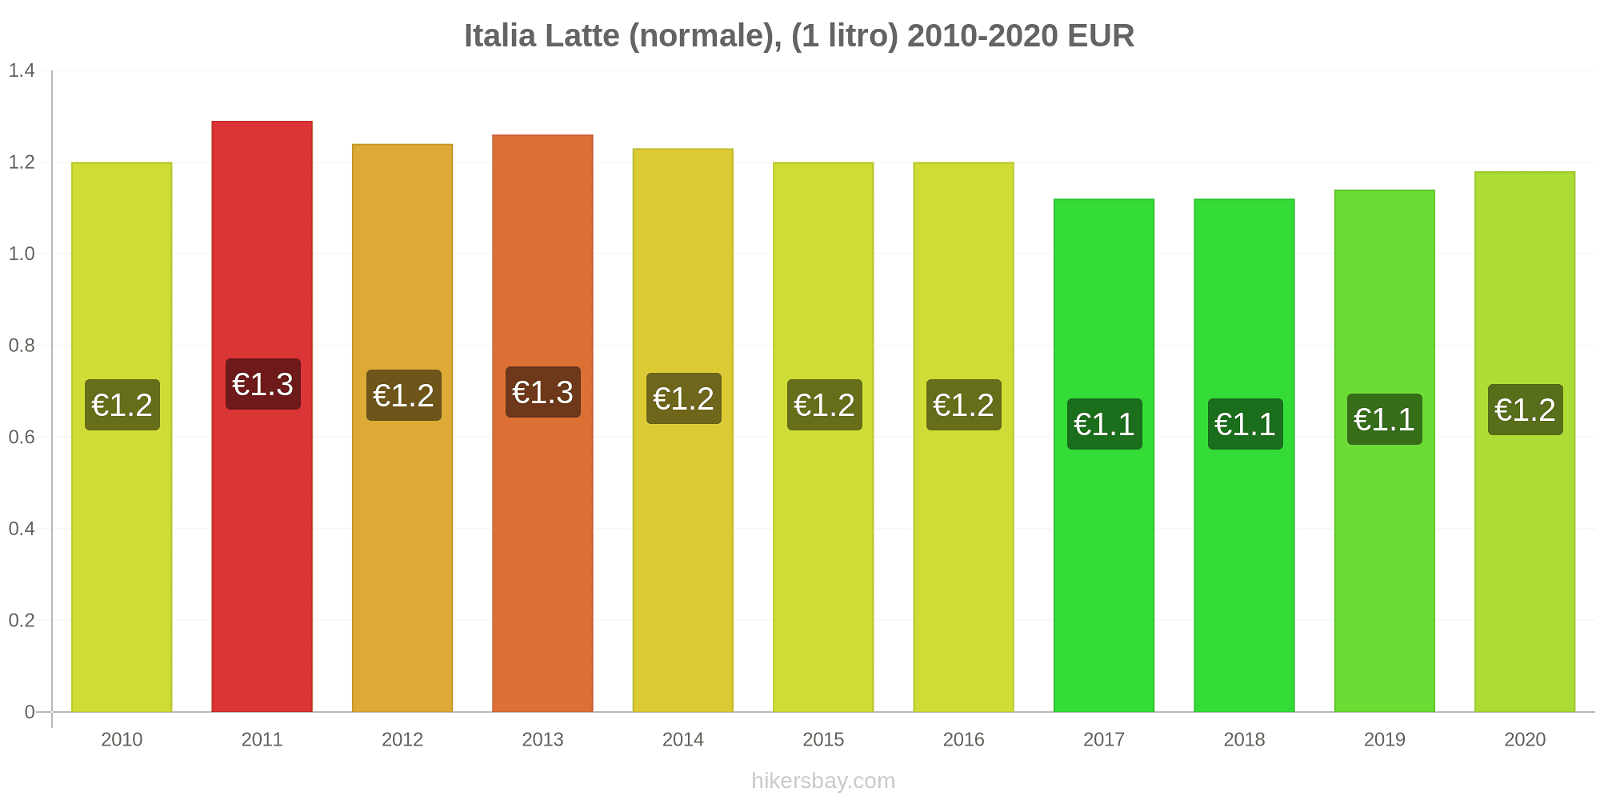 Italia variazioni di prezzo Latte (1 litro) hikersbay.com